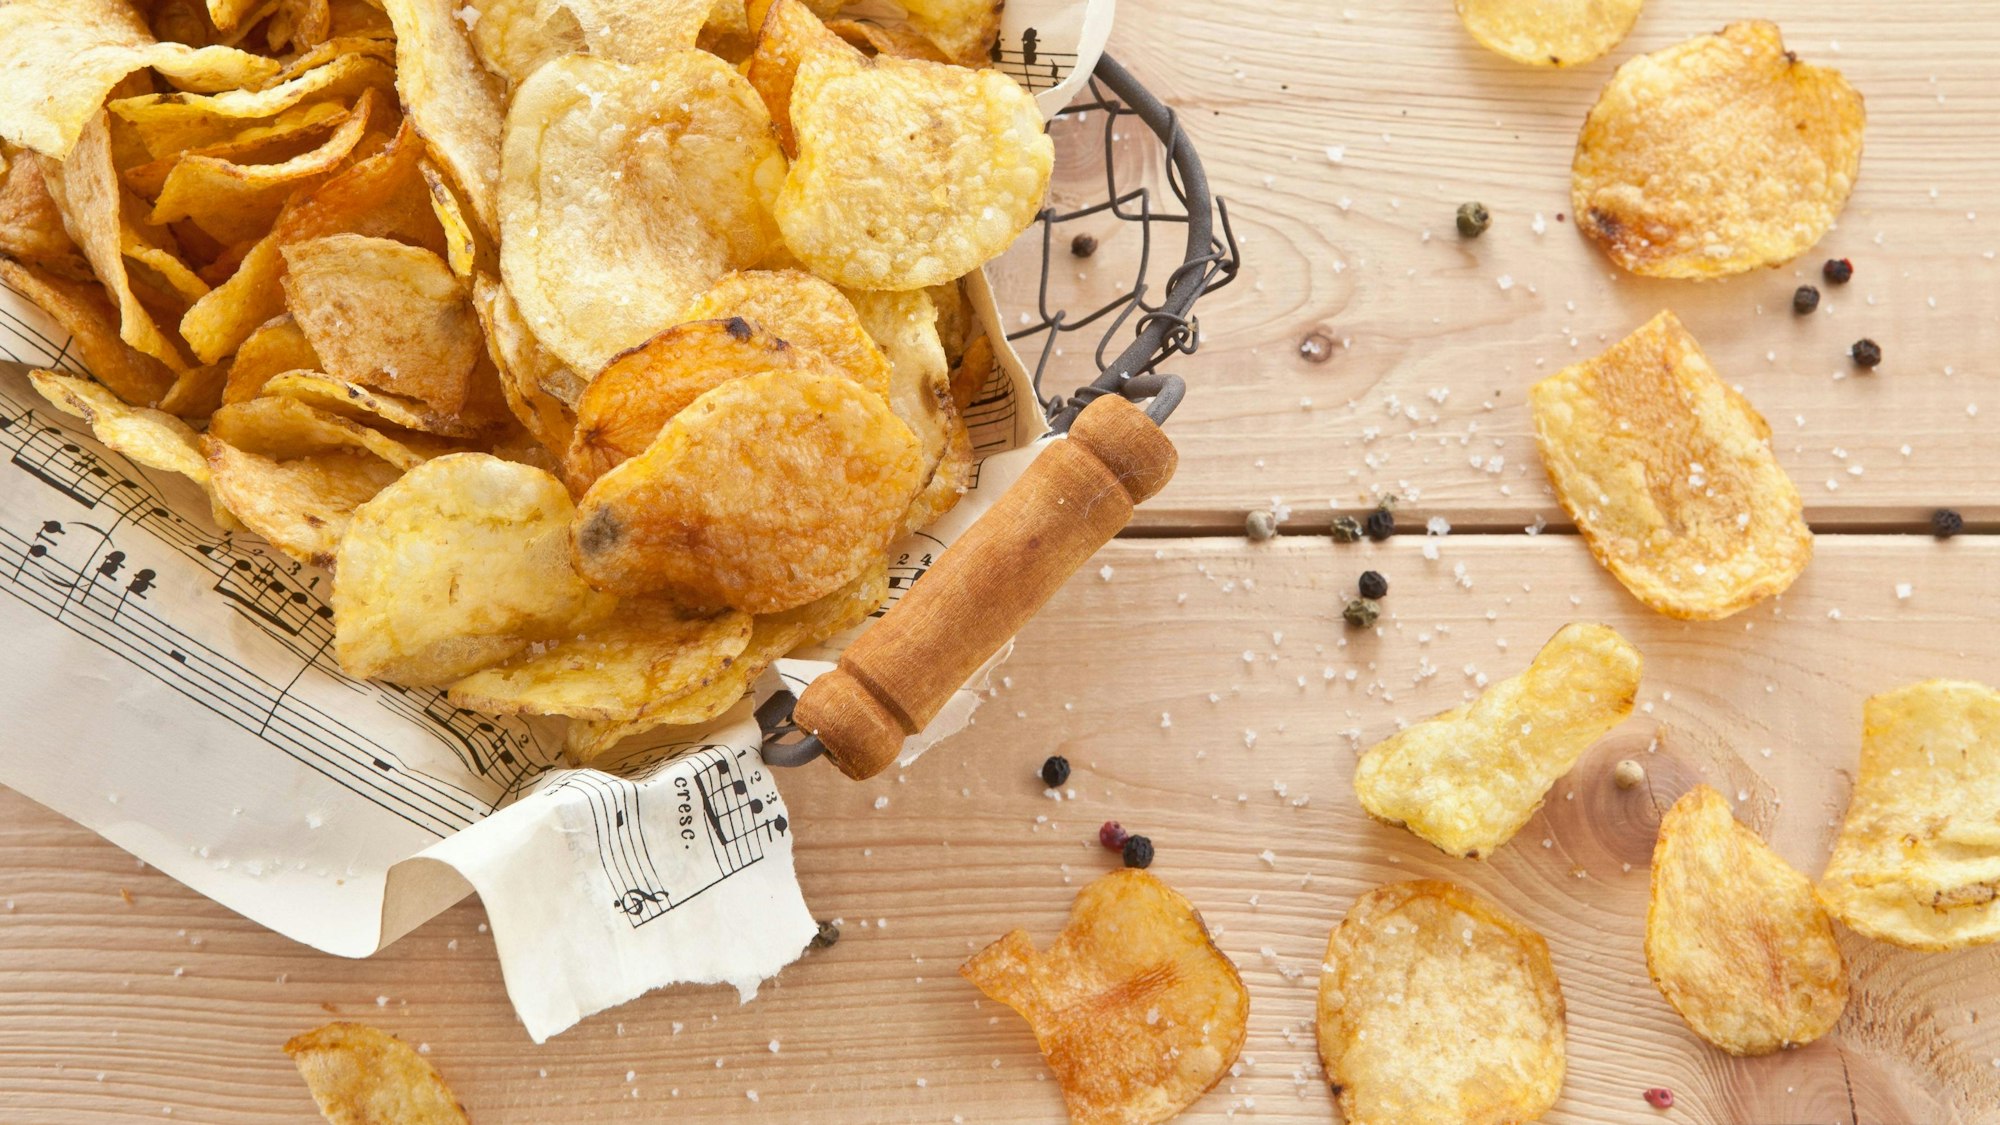 Kartoffelchips, wie auf dem Symbolfoto dargestellt, sind ein beliebter Snack.